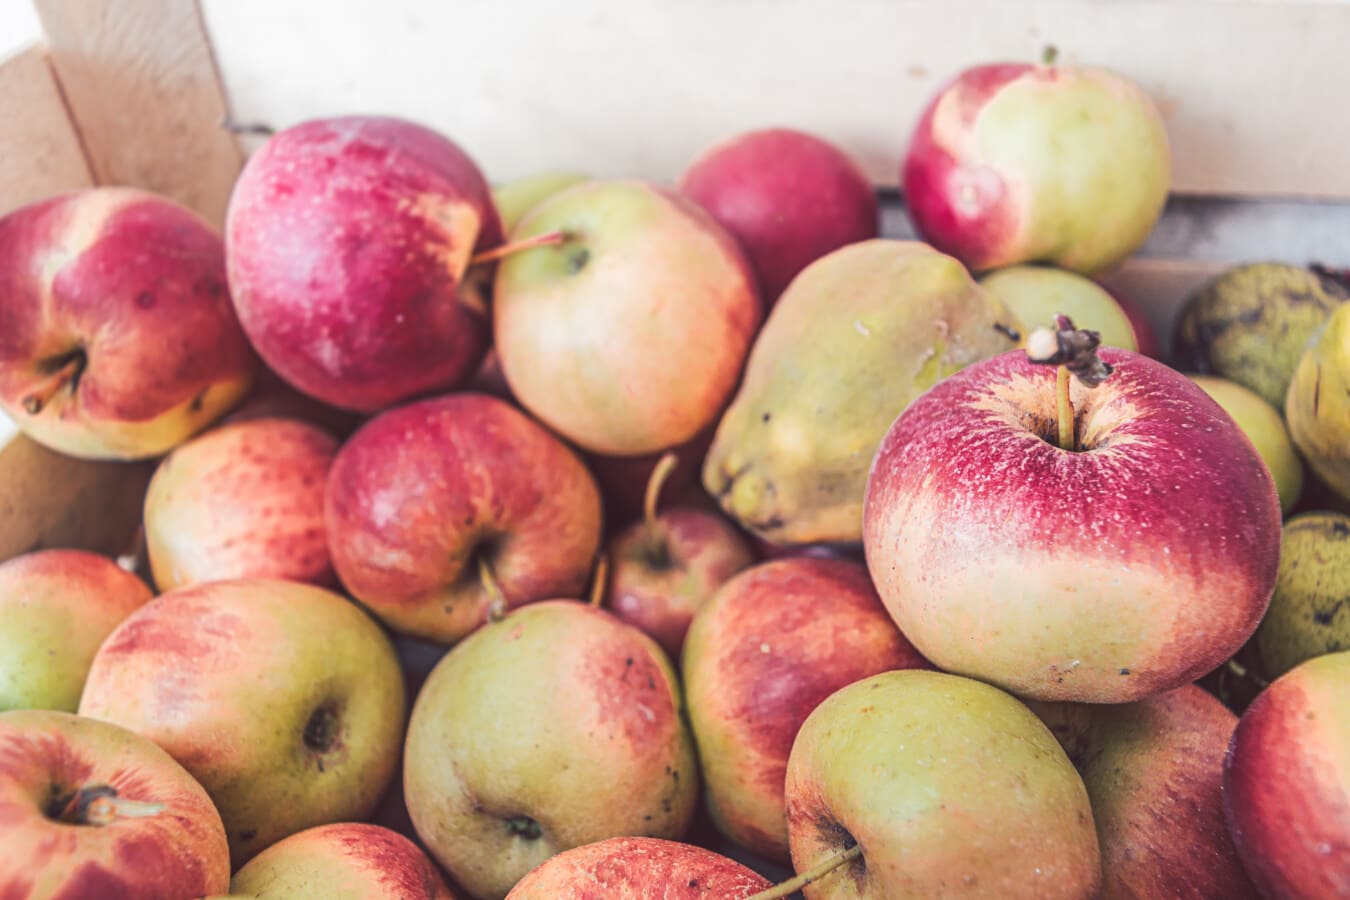 органічні, яблука, фрукти, стиглі плоди, продукти, сільське господарство, свіжі, смачні, яблуко, здоровий